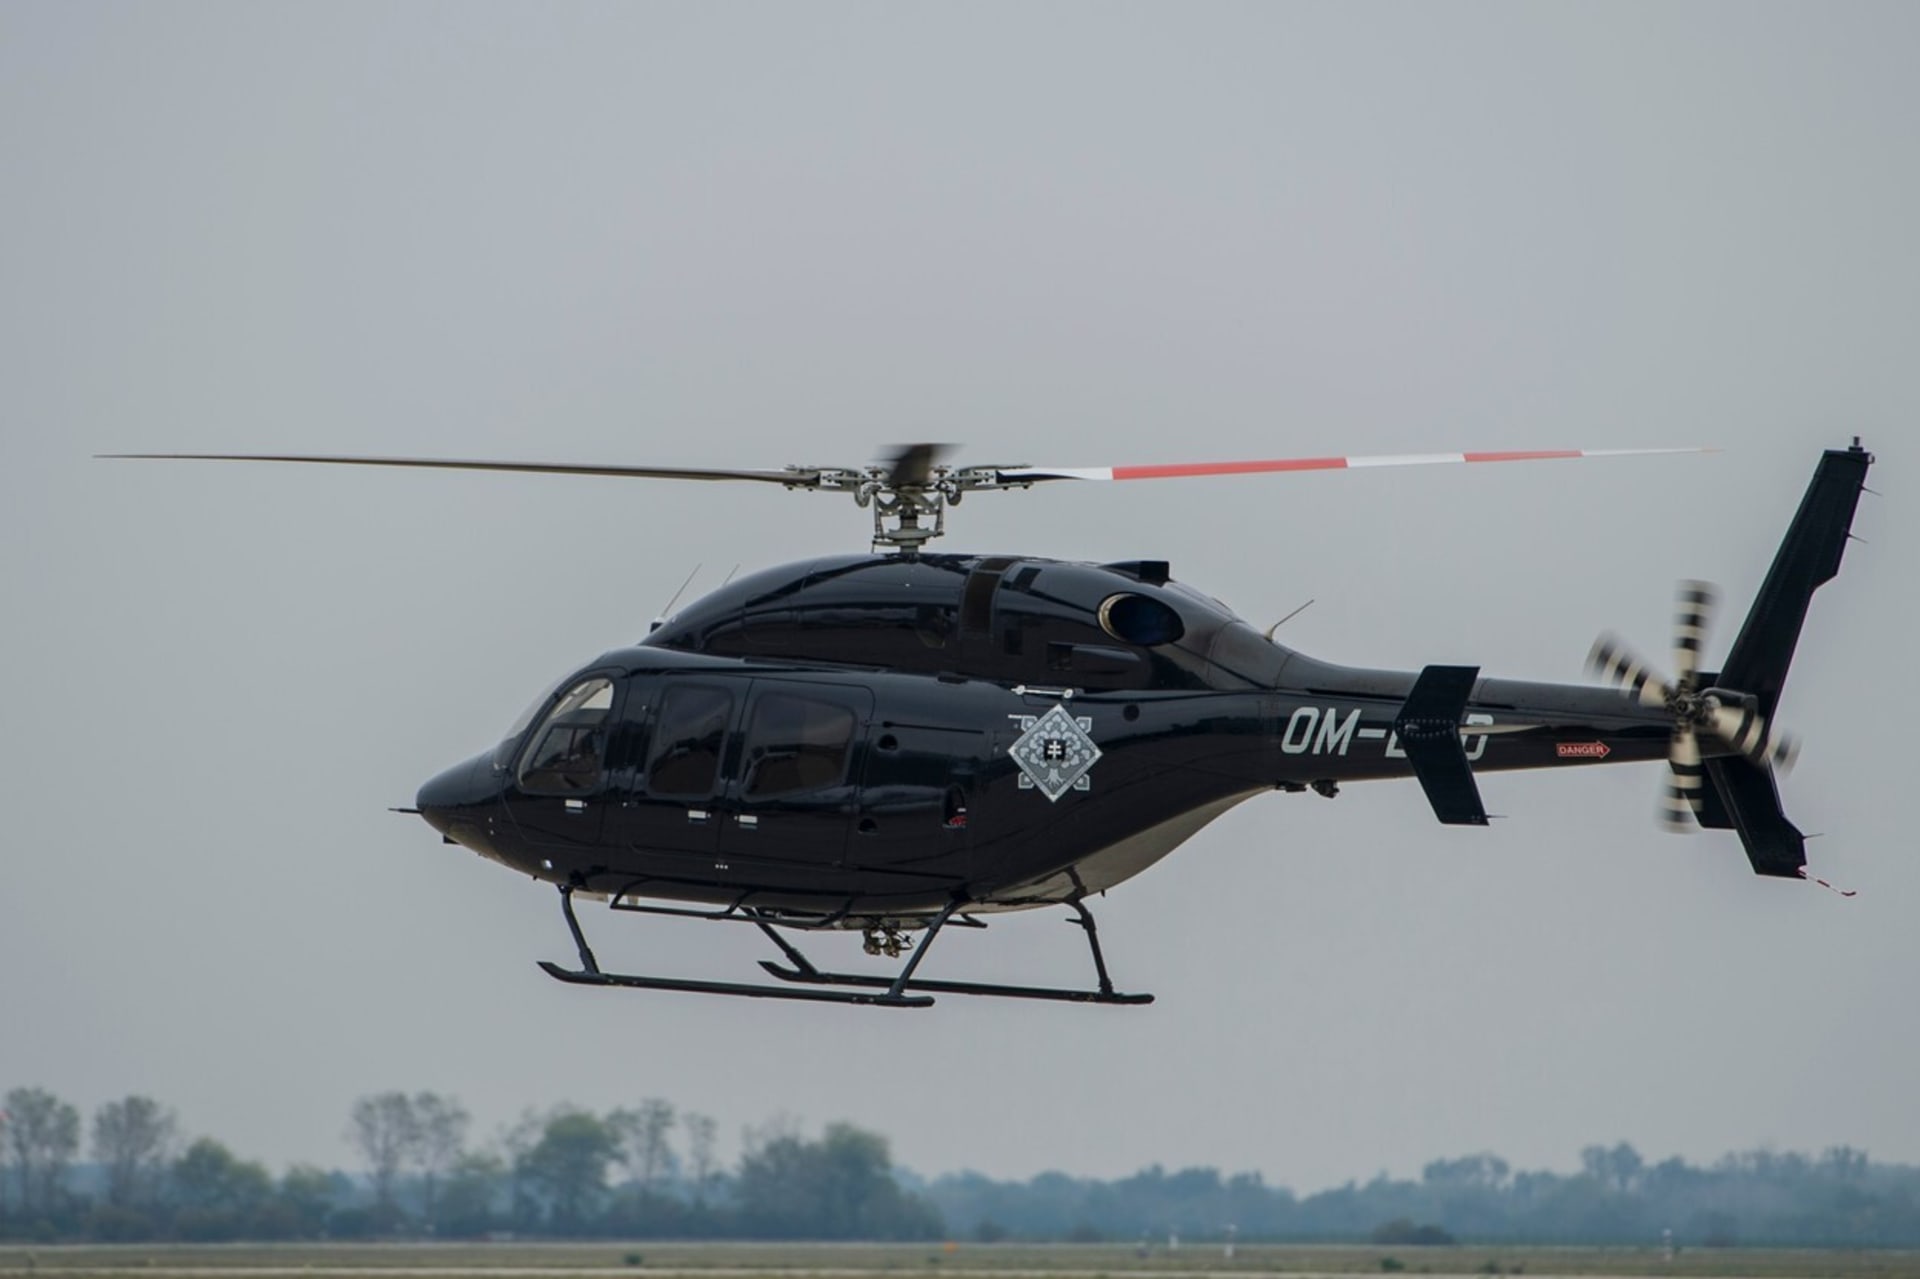 Americká firma Bell dodává armádní vrtulníky také na Slovensko. Třeba konkrétně tento.